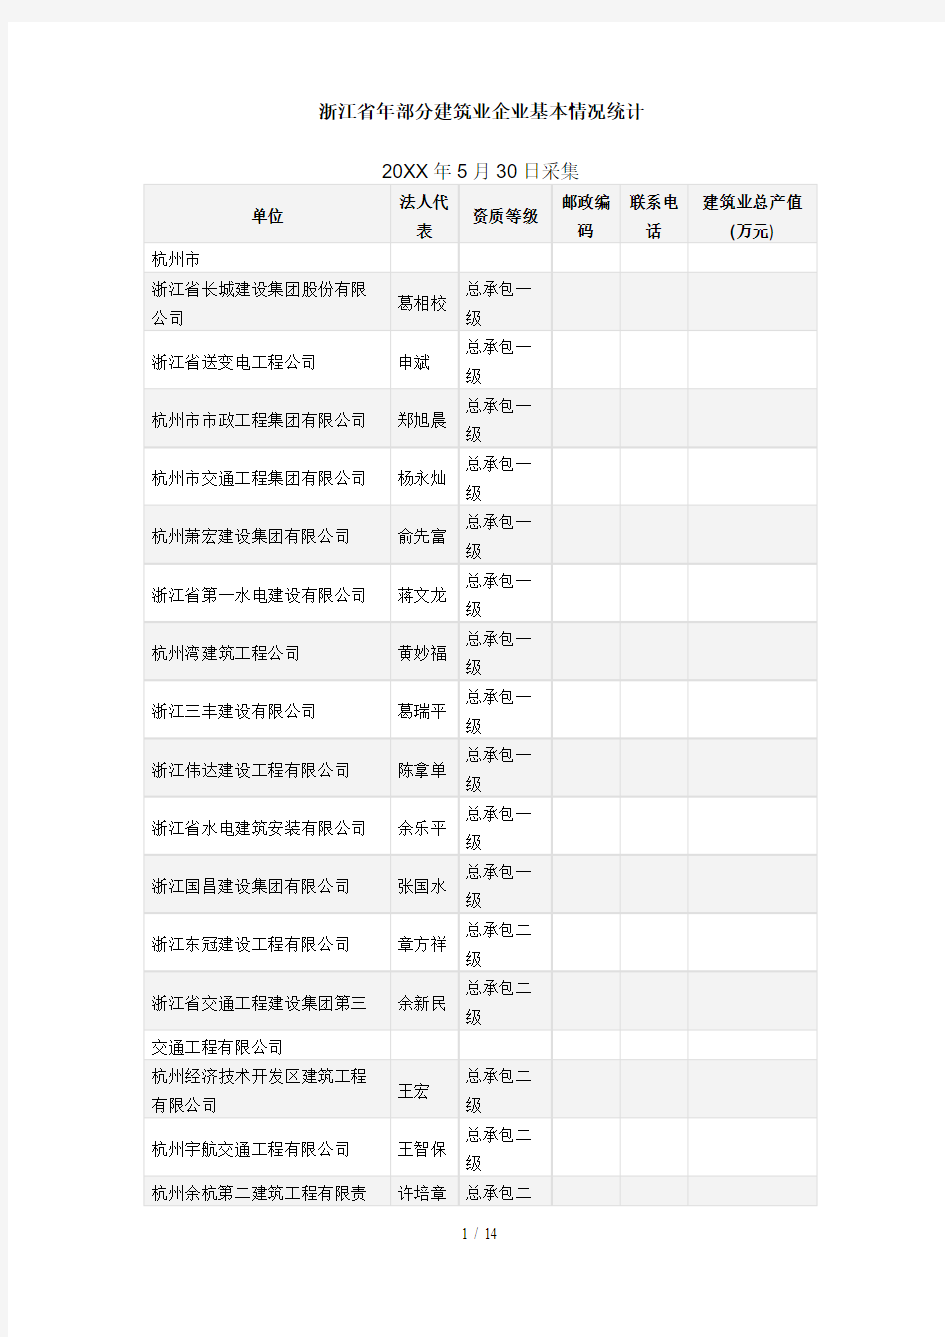 浙江省部分建筑业企业基本情况统计